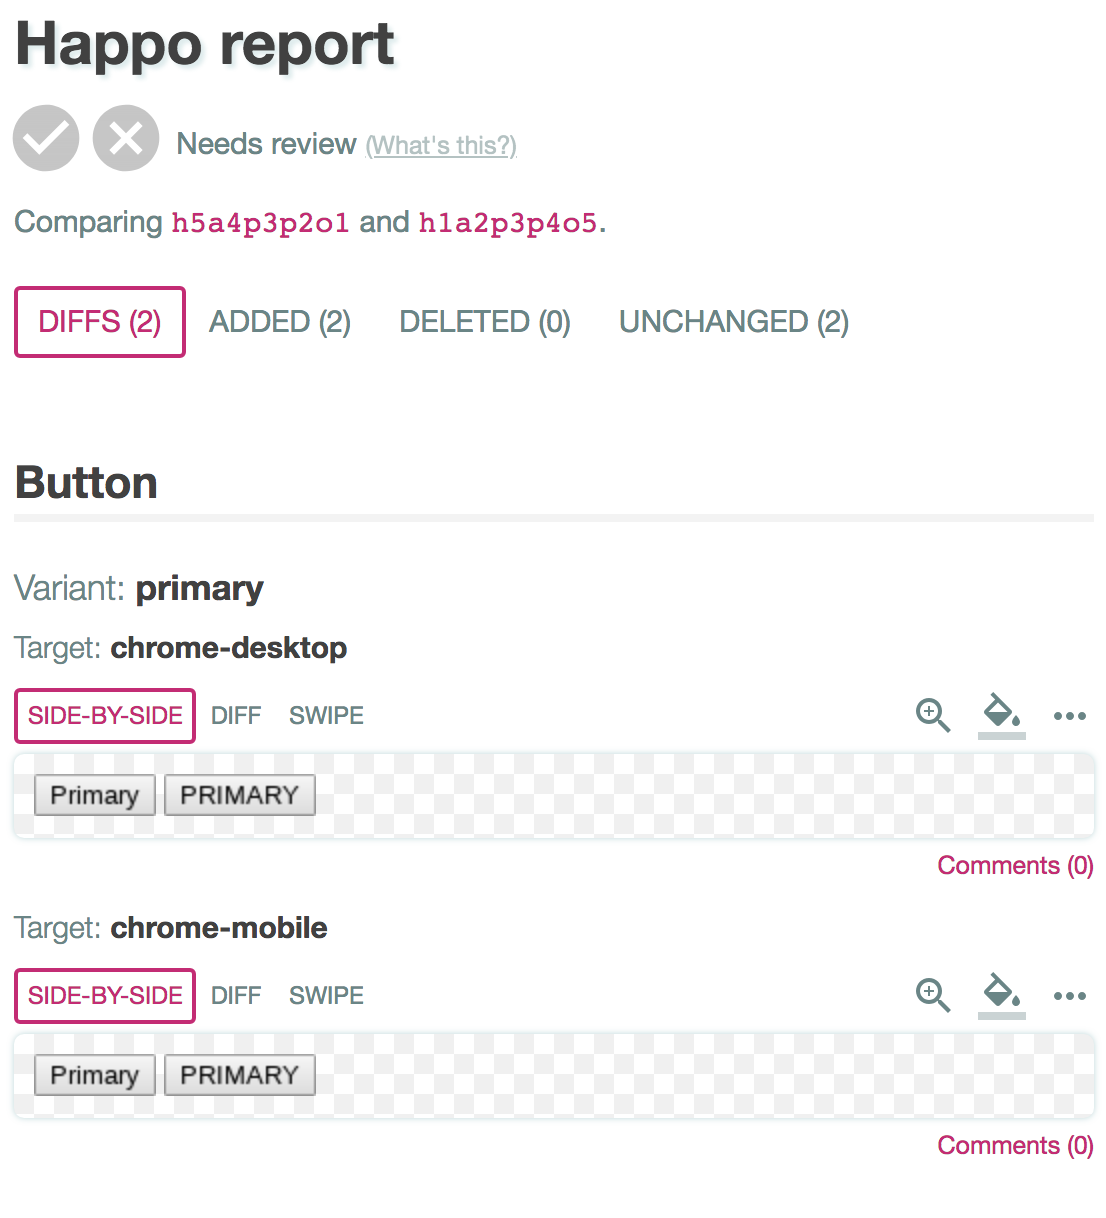 Happo report page